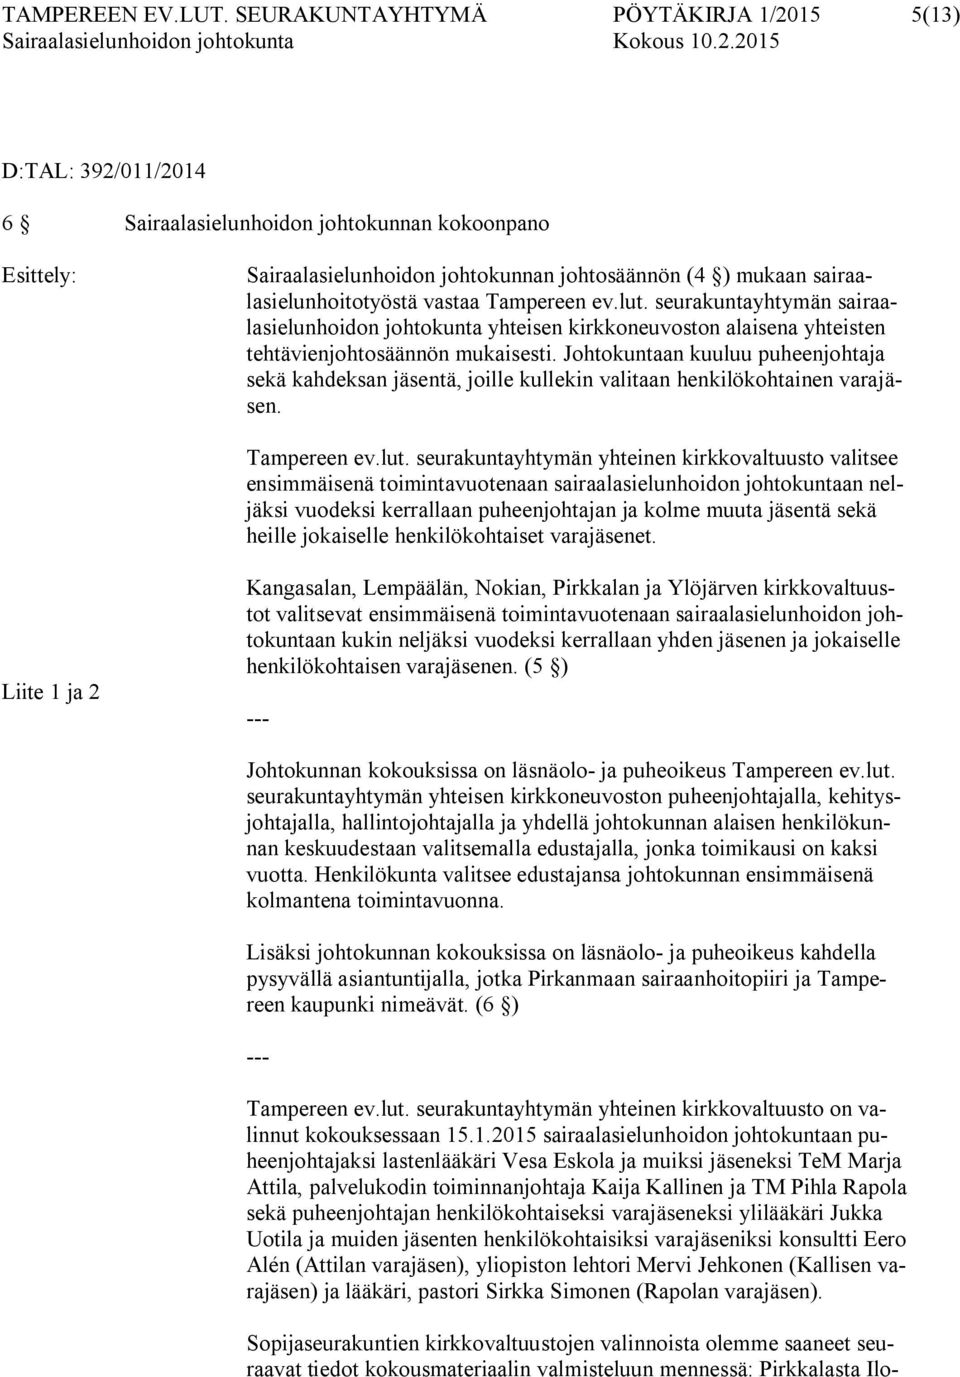 sairaalasielunhoitotyöstä vastaa Tampereen ev.lut. seurakuntayhtymän sairaalasielunhoidon johtokunta yhteisen kirkkoneuvoston alaisena yhteisten tehtävienjohtosäännön mukaisesti.